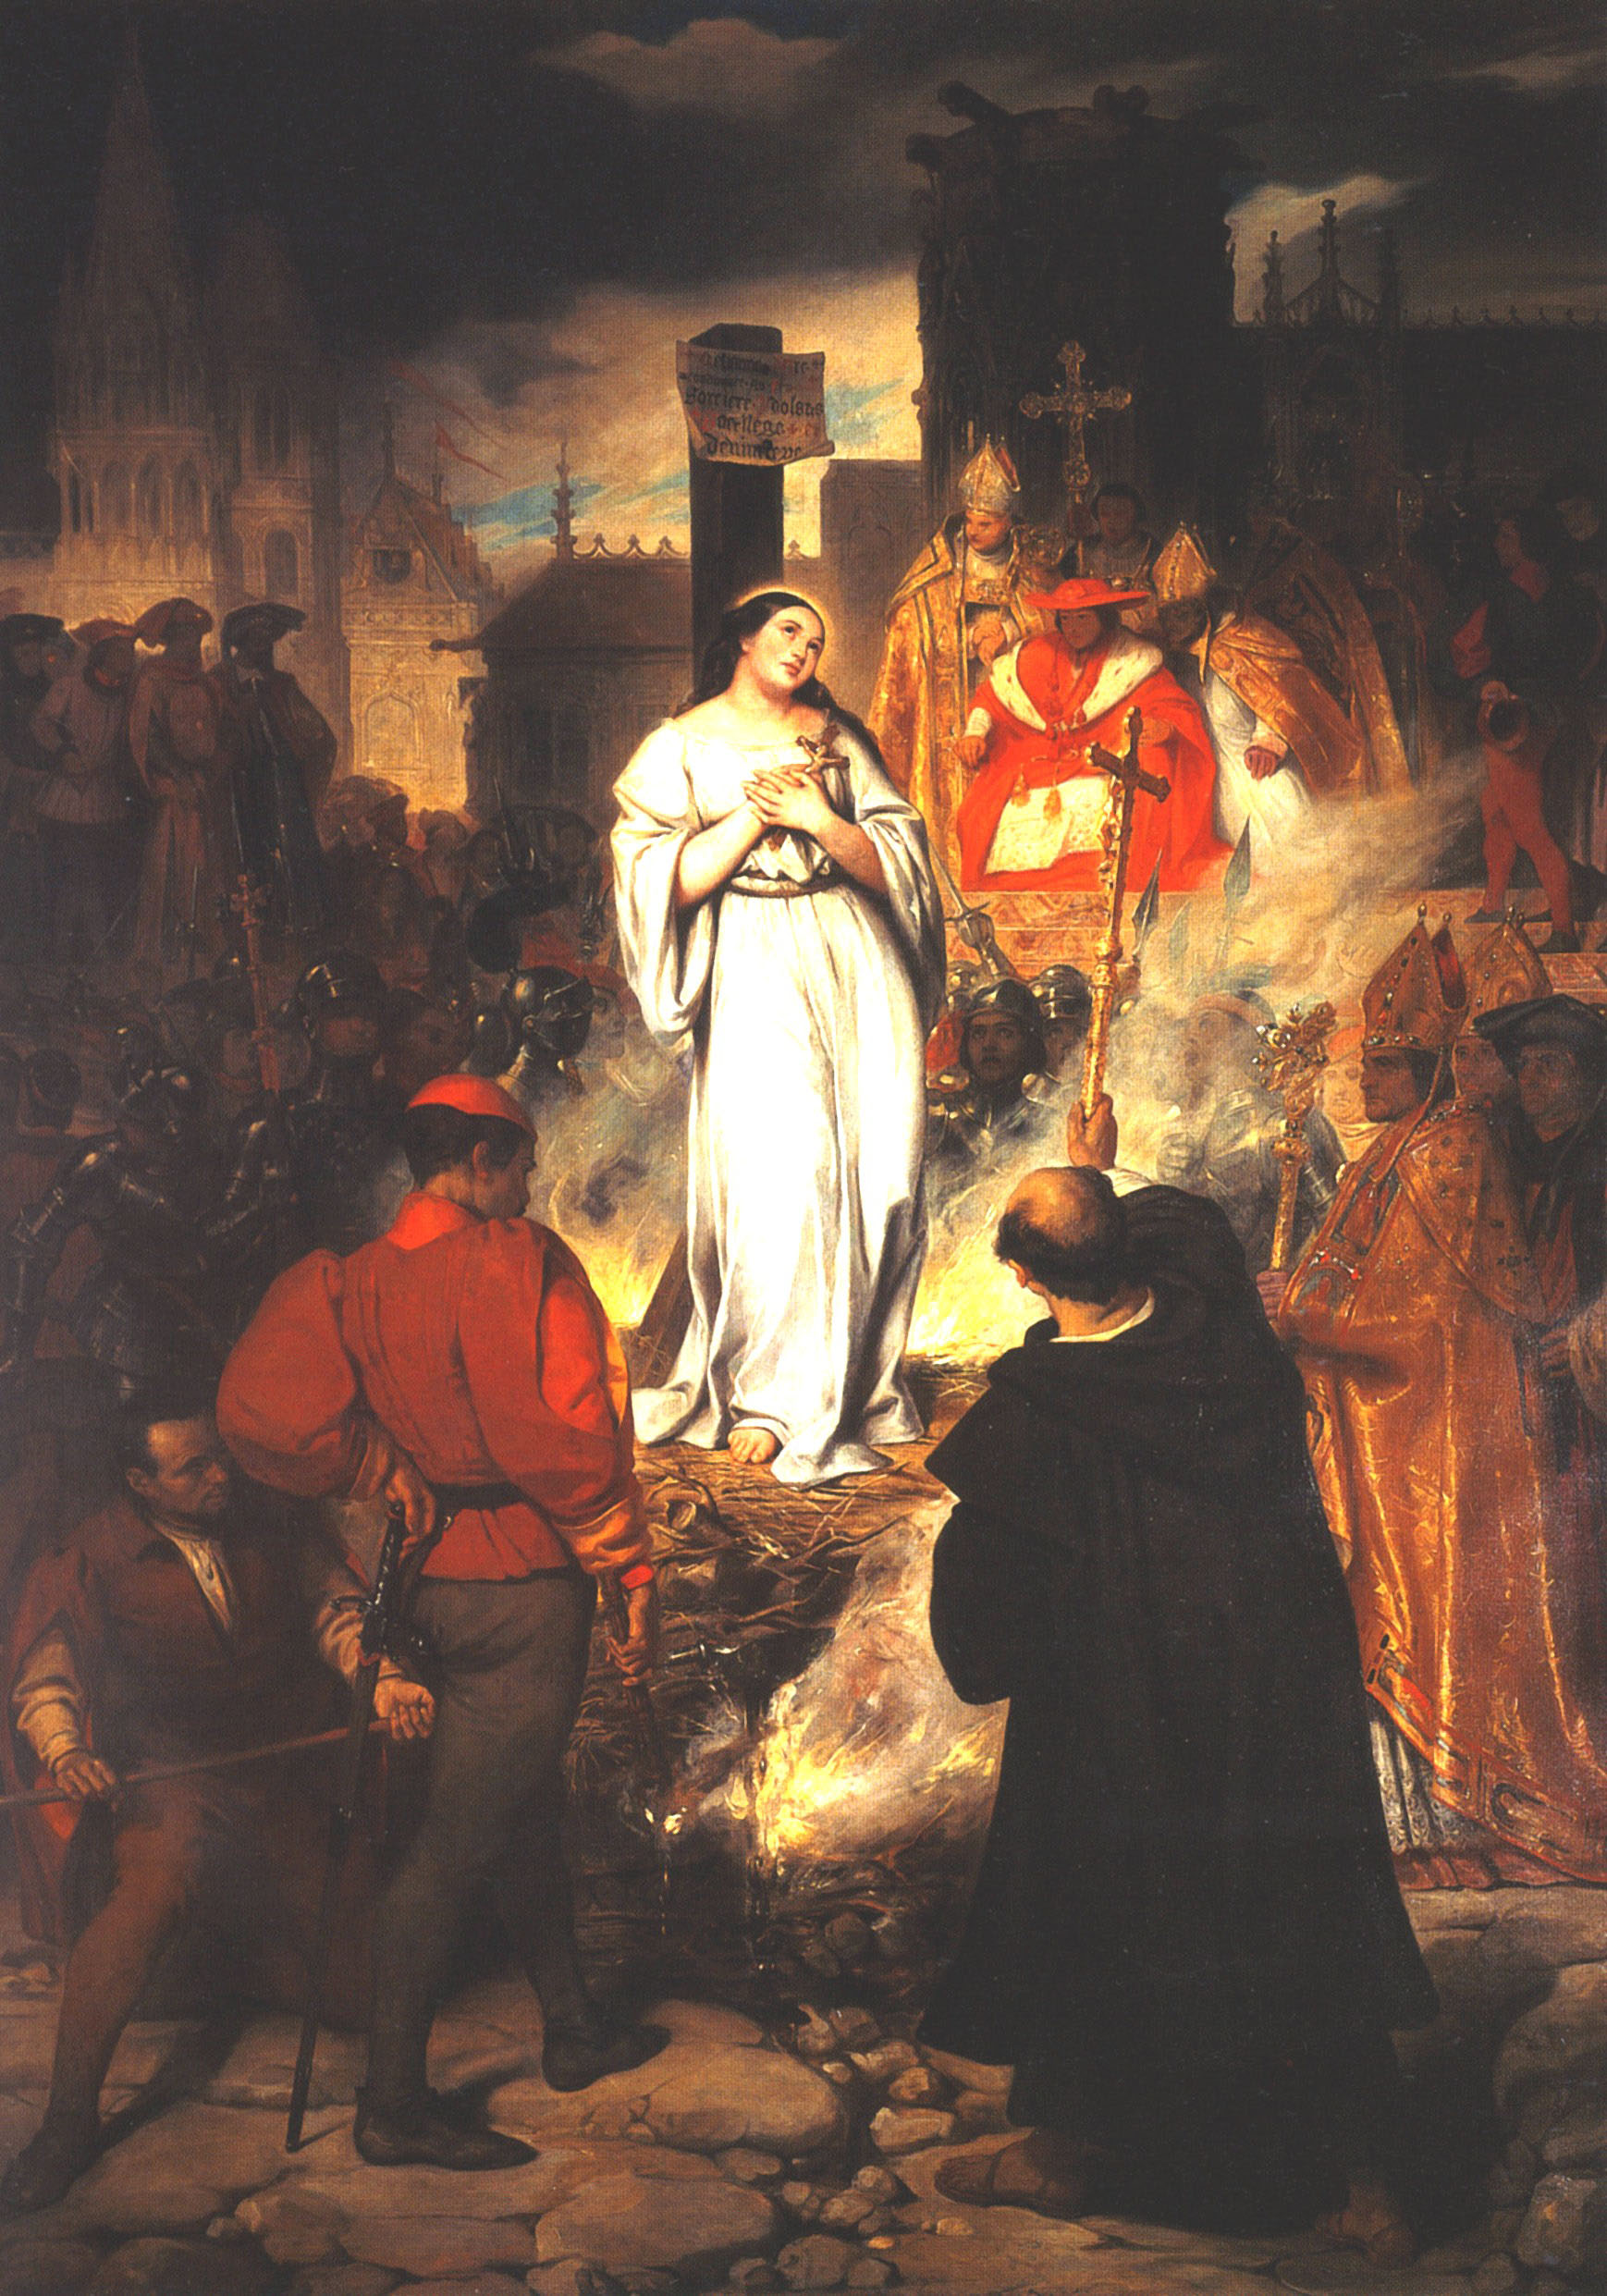 Эжен Девериа. "Смерть Жанны д'Арк на костре". 1831.